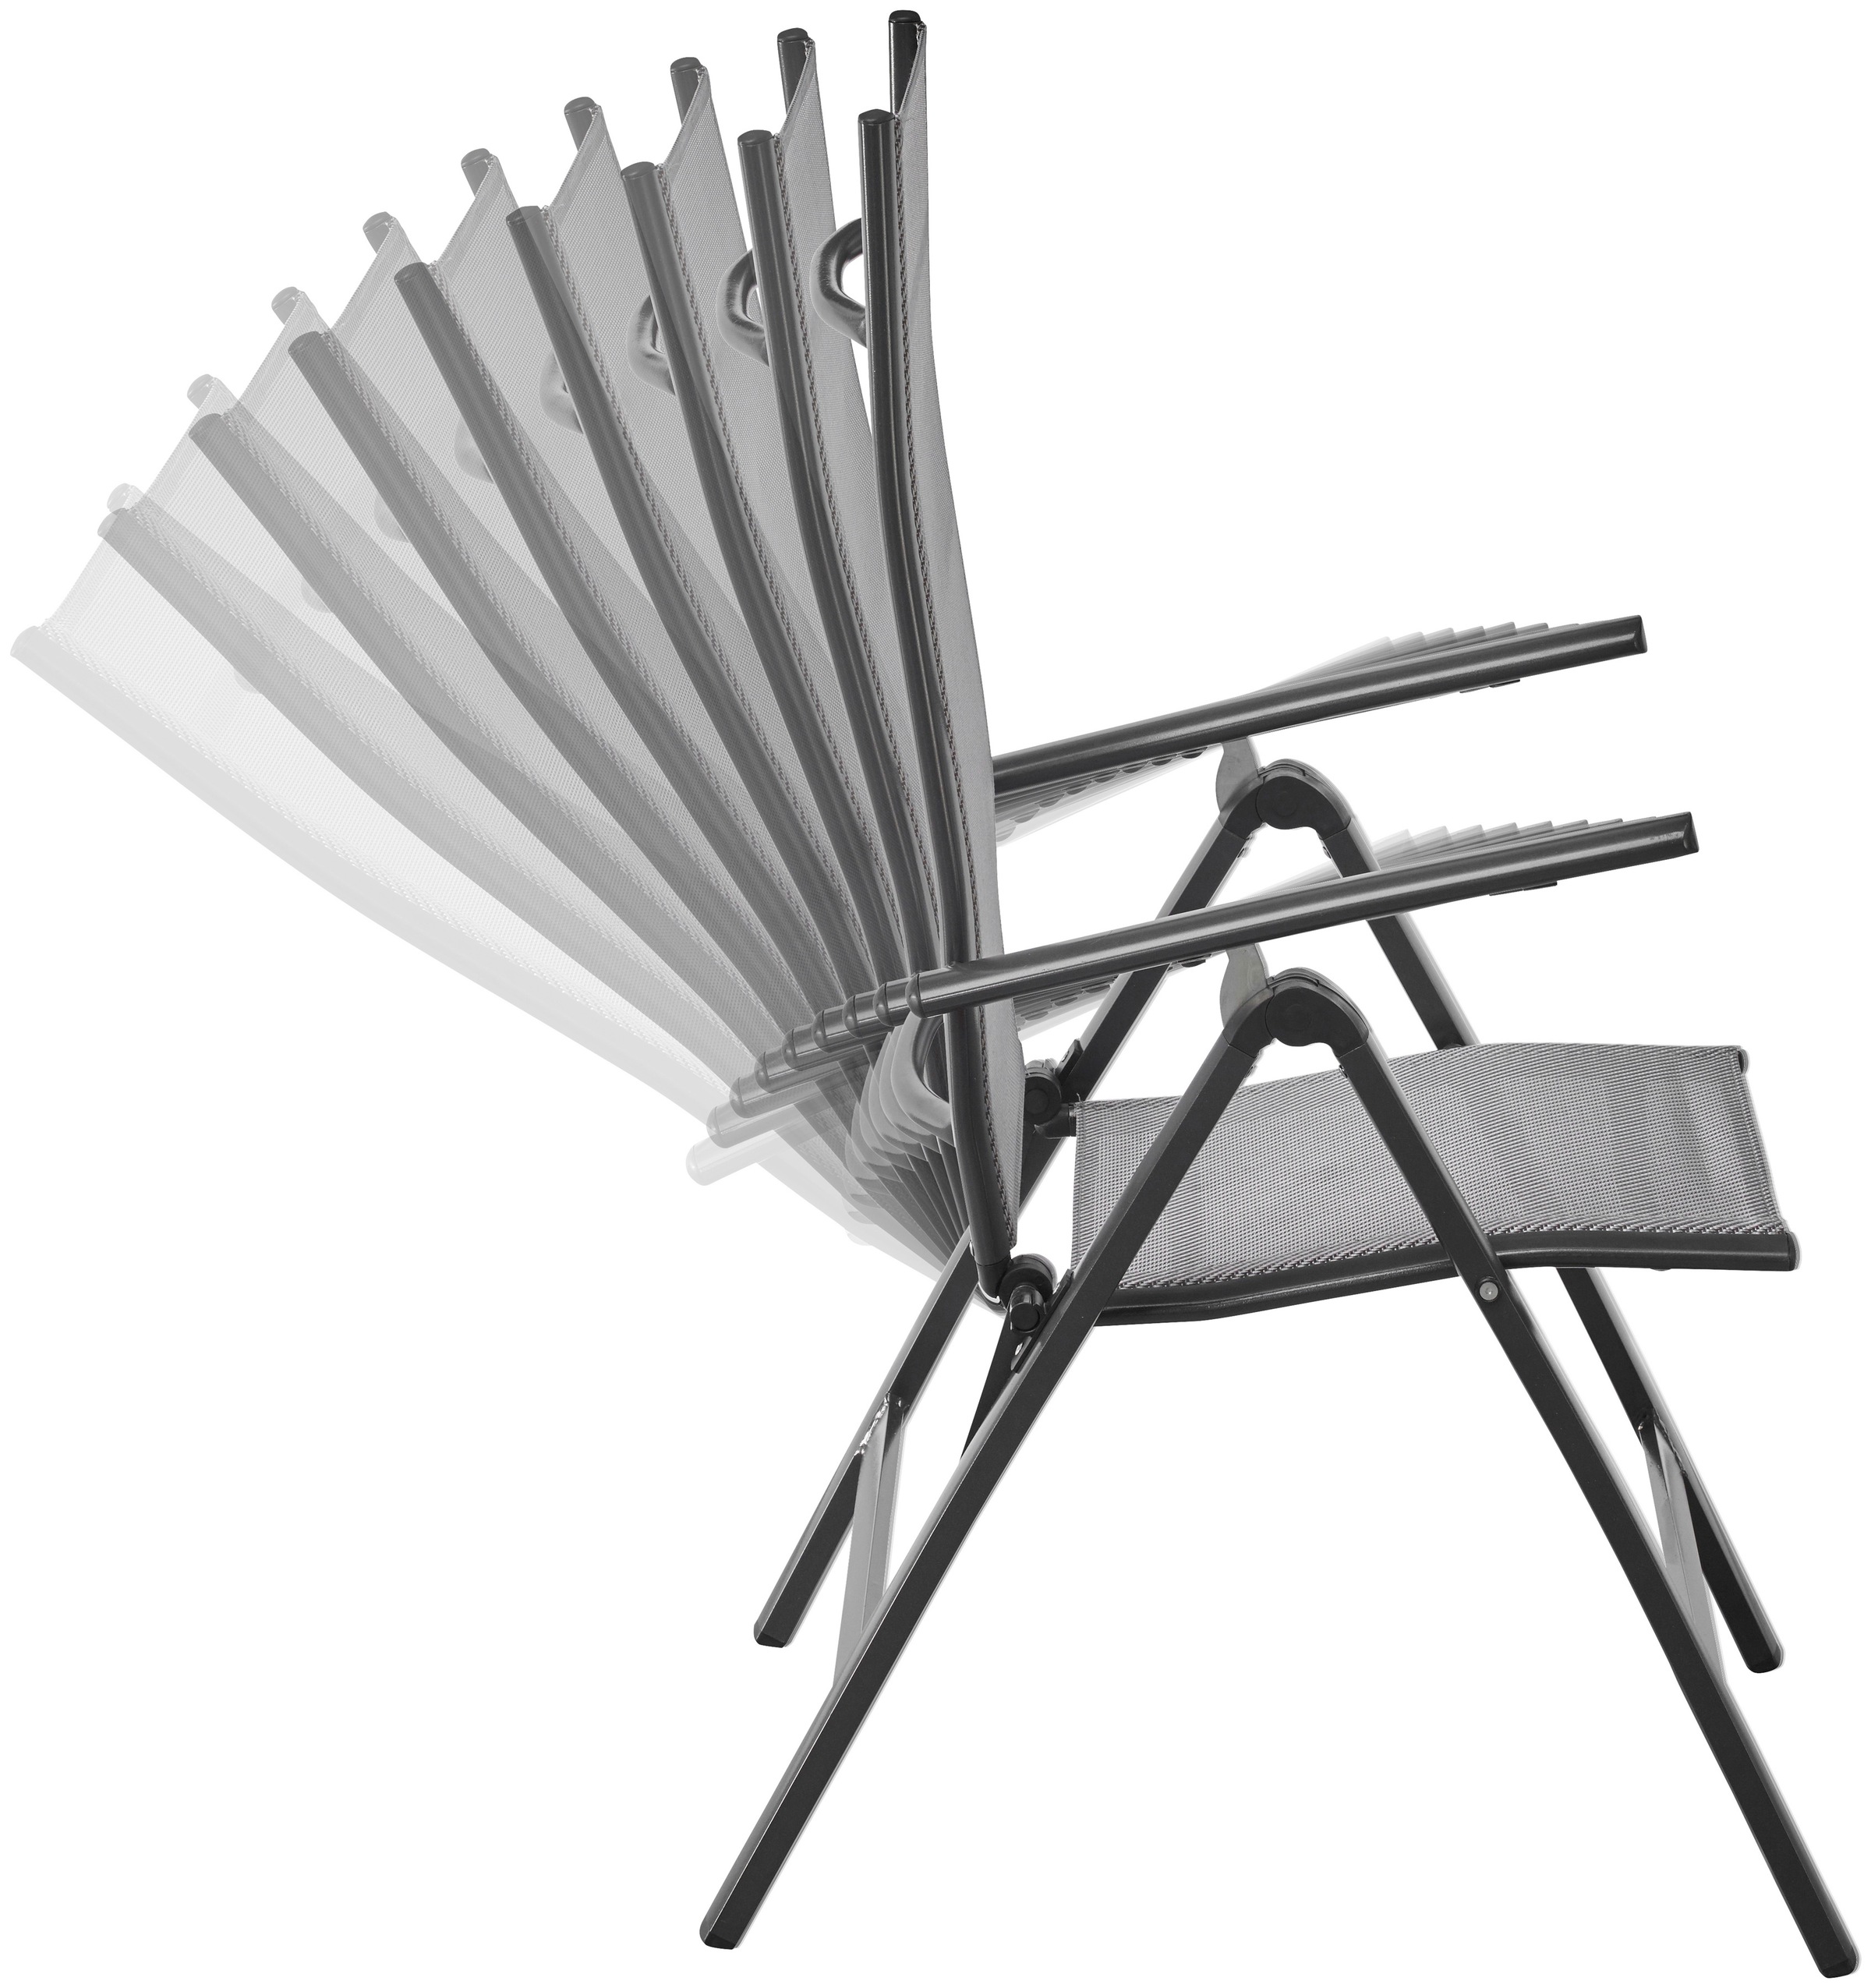 MERXX Garten-Essgruppe »Amalfi«, mit 4 Stühlen und ausziehbarem Tisch (120 - 180 cm)